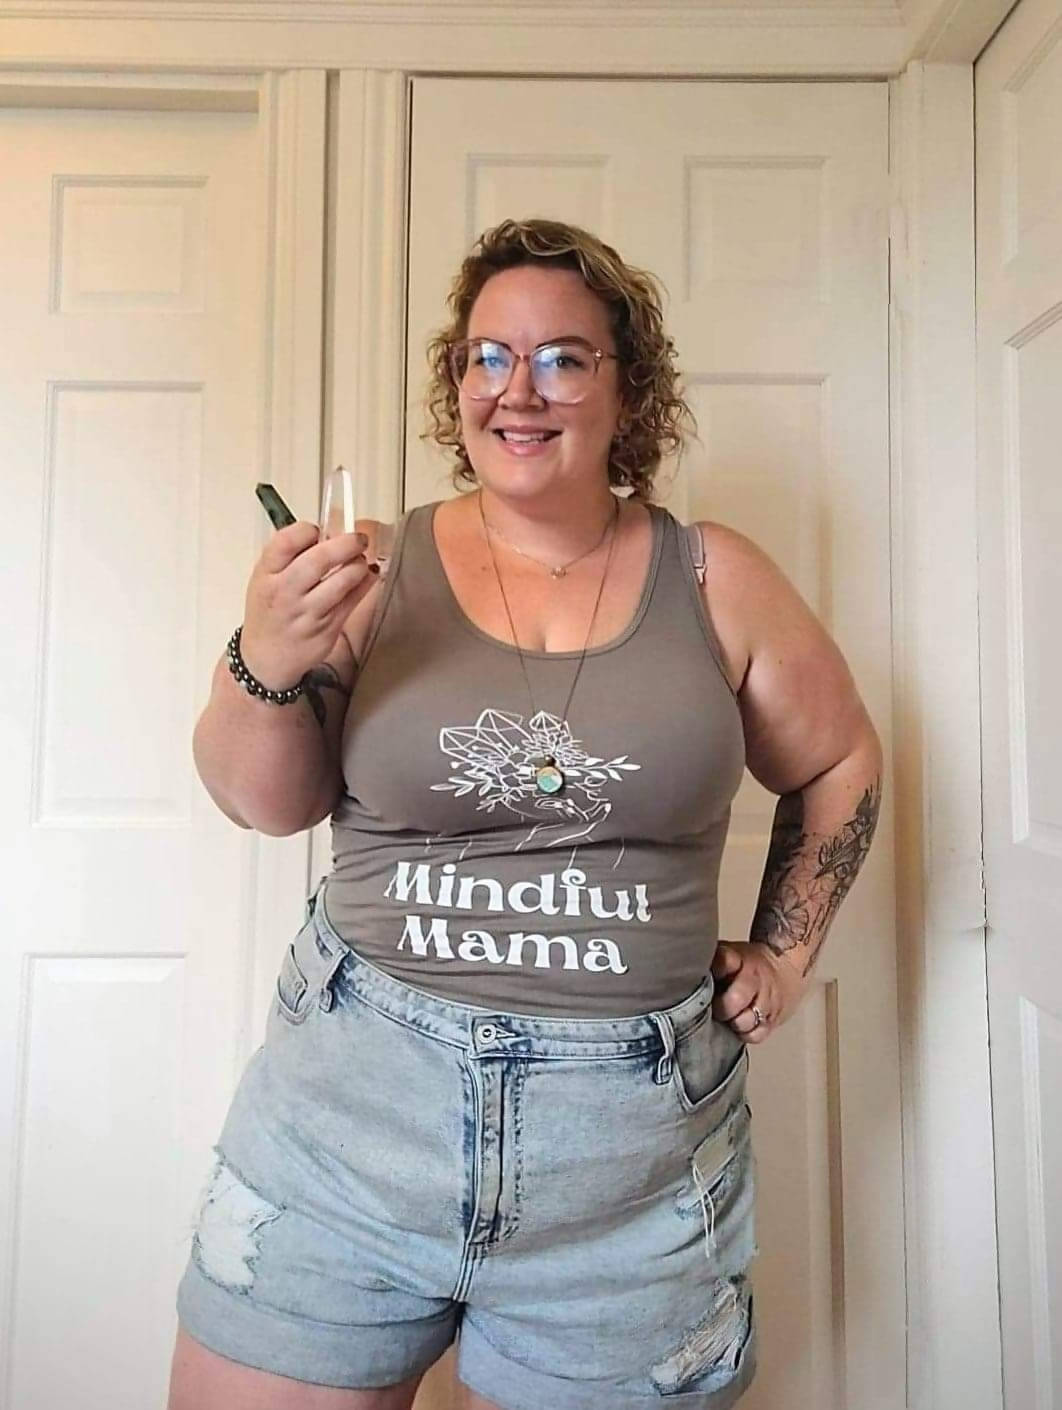 Mindful mama women's tank